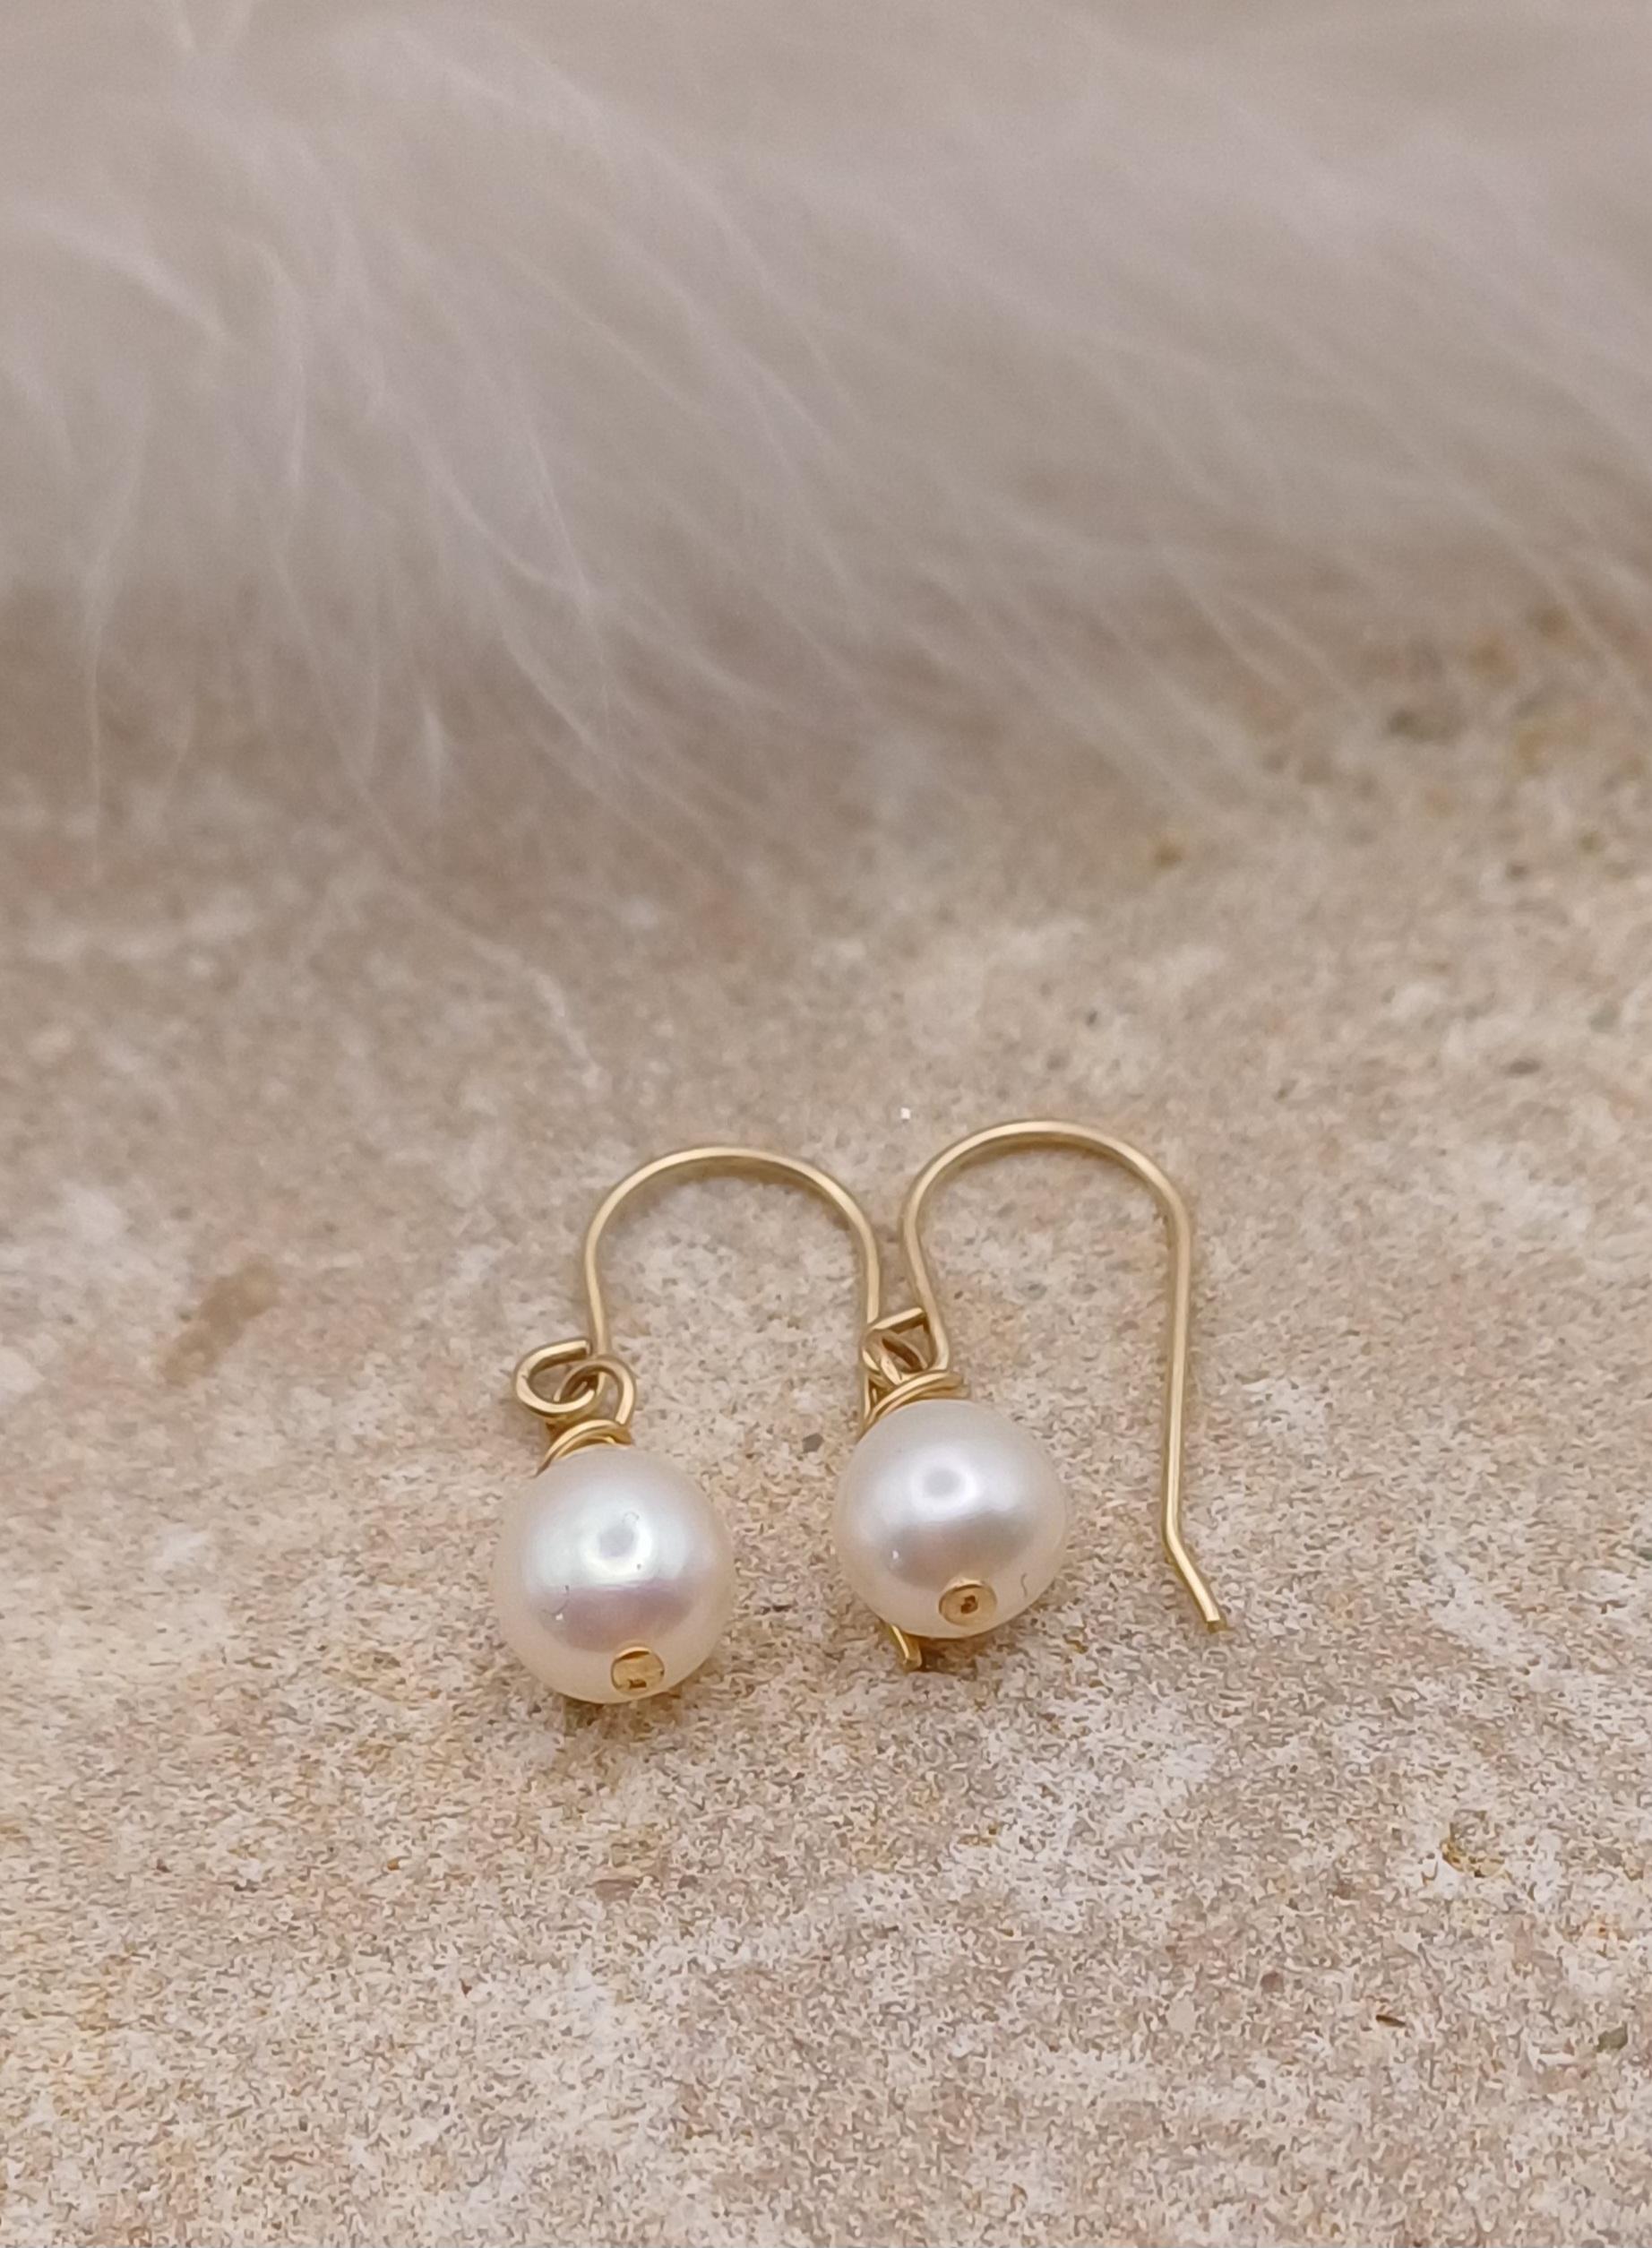 EARRINGS - 9ct Gold Drop Pearl Earrings